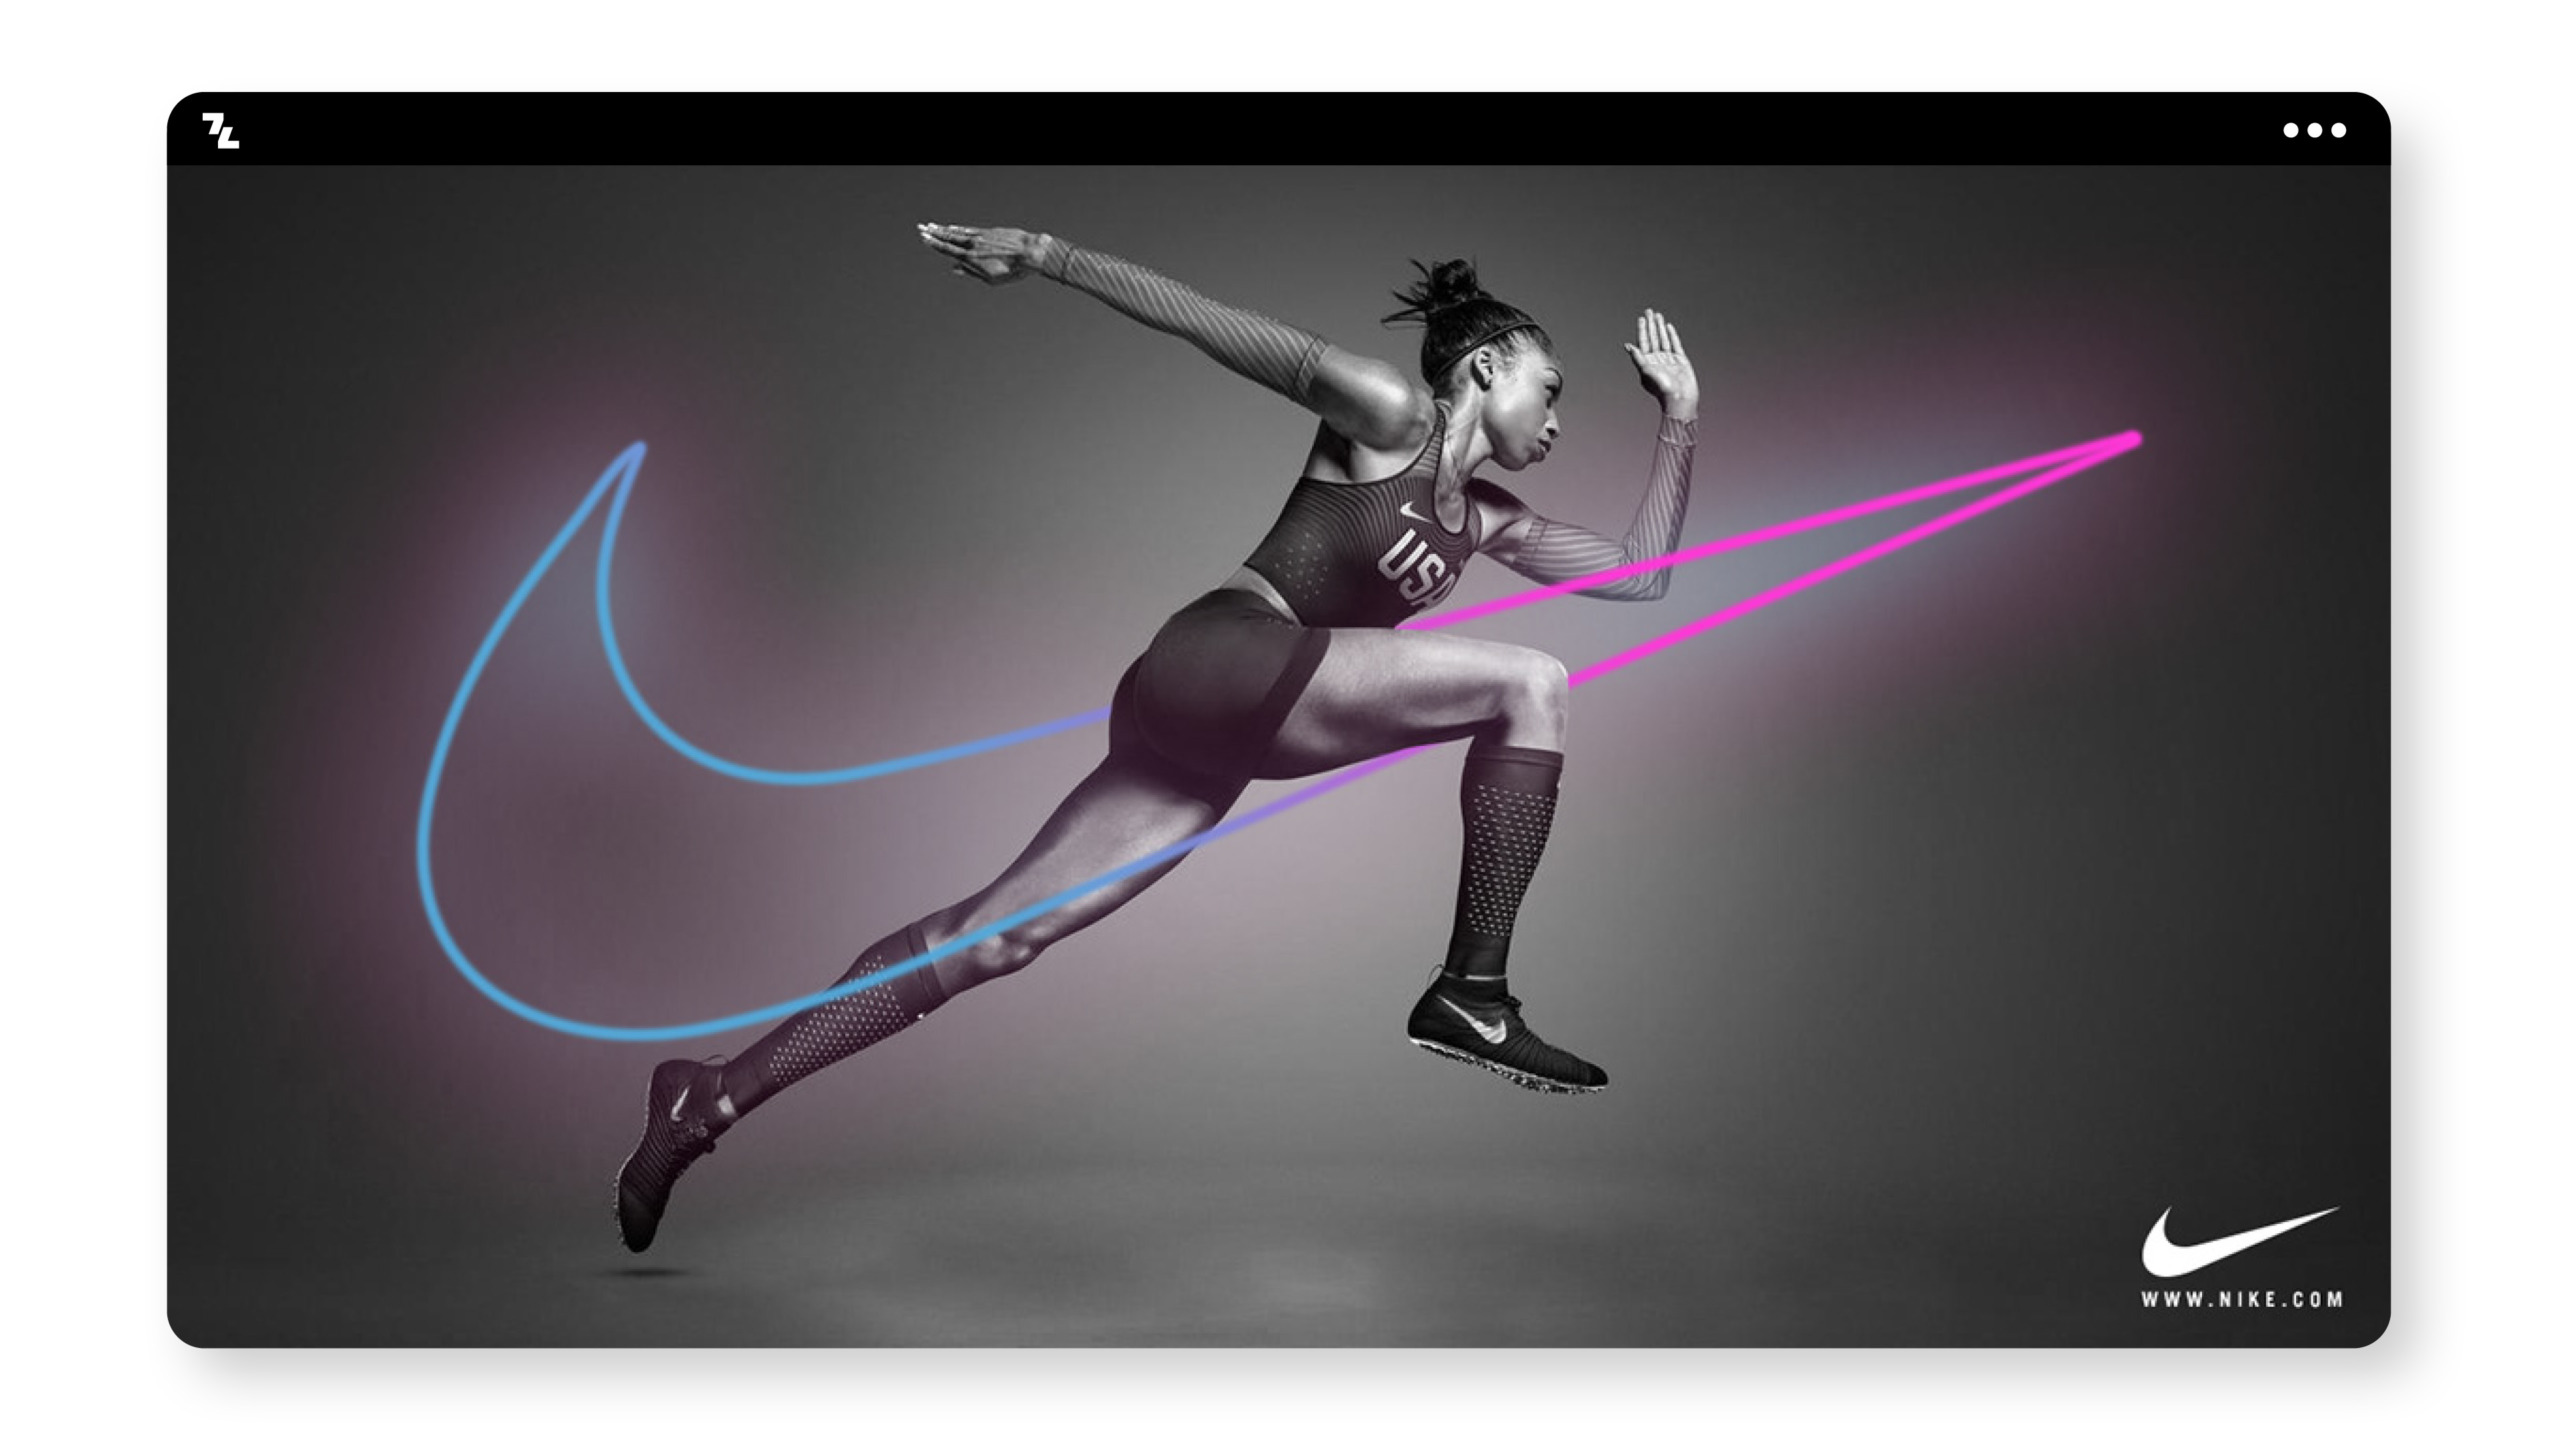 Nike-Swoosh-Logo auf einem Computerbildschirm als Beispiel für Branding.